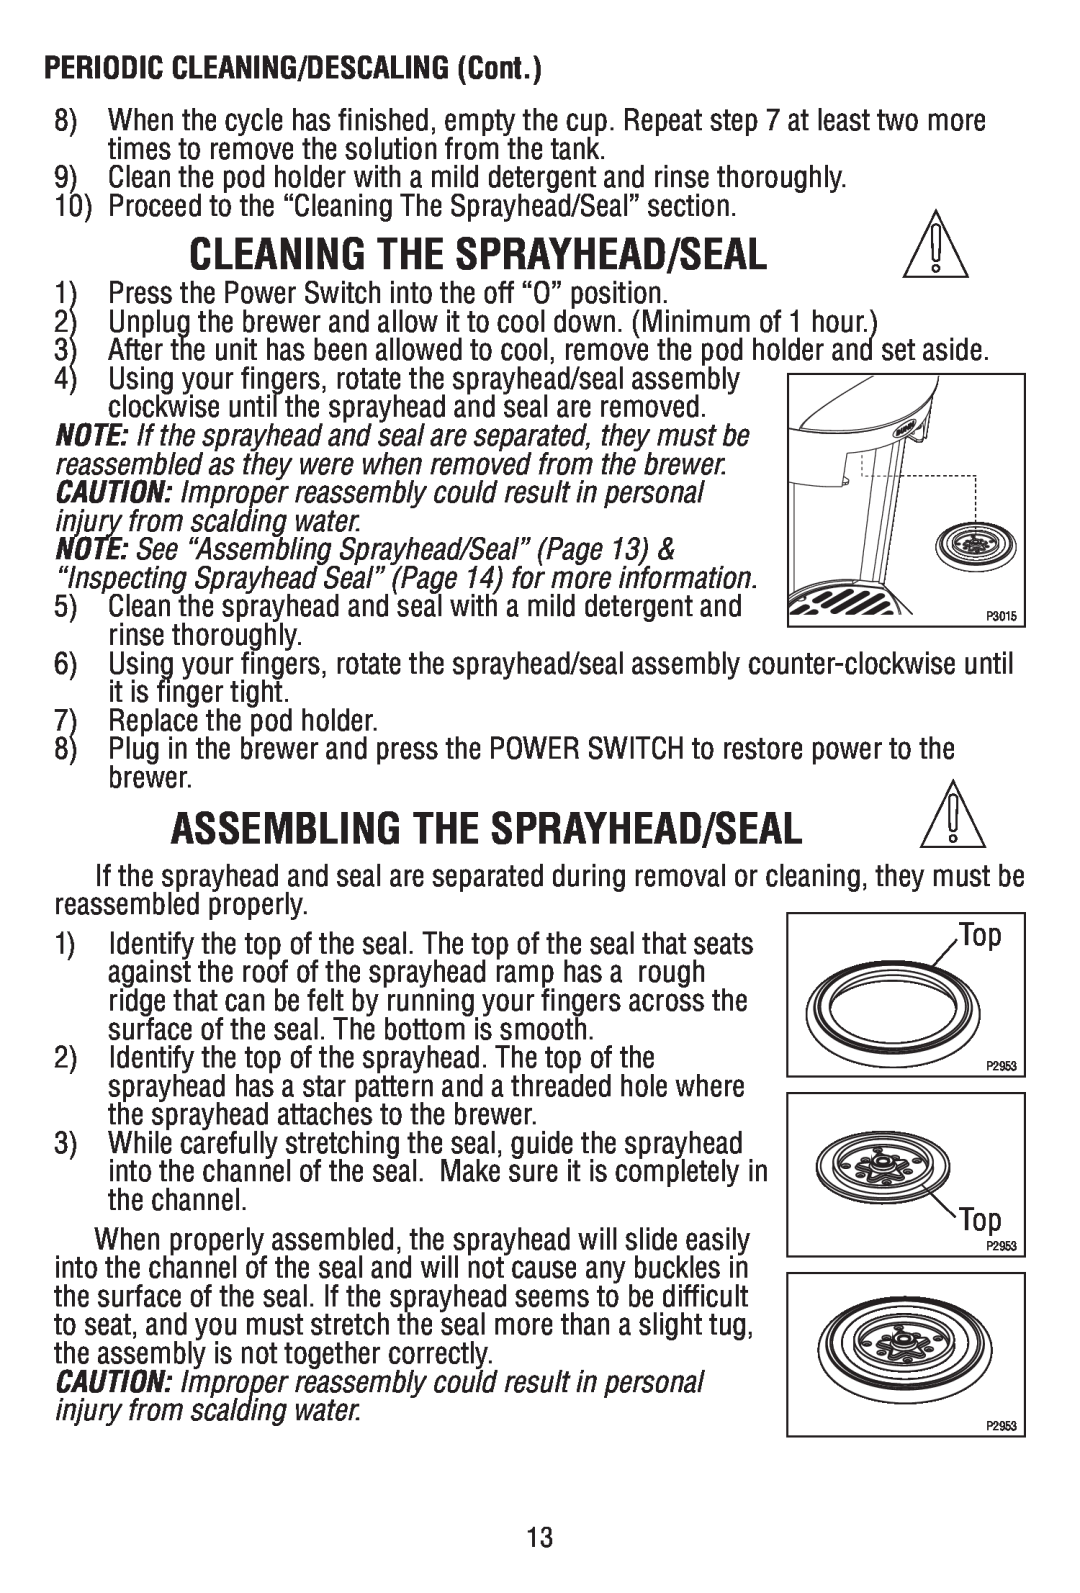 Bunn MCPA manual Cleaning The Sprayhead/Seal, Assembling The Sprayhead/Seal, PERIODIC CLEANING/DESCALING Cont 